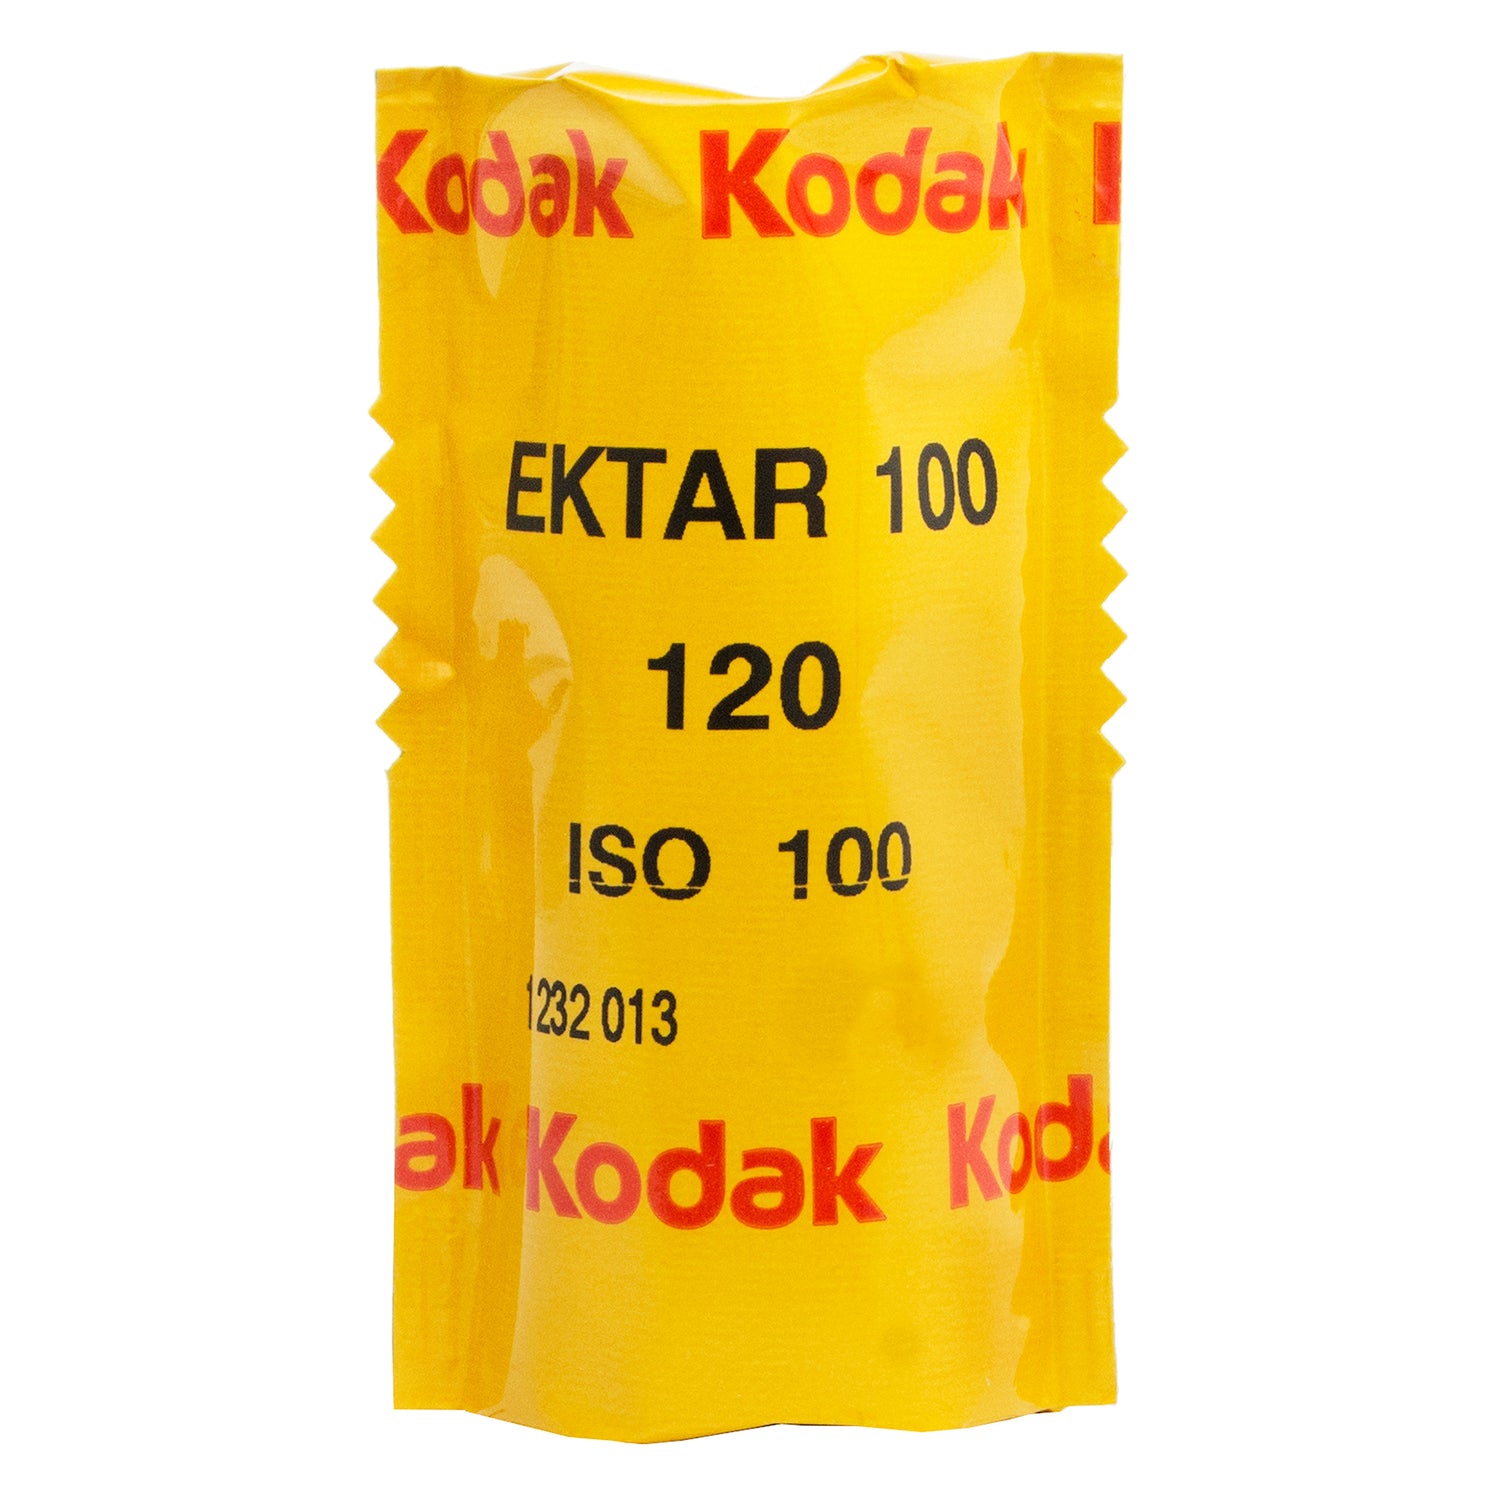 Kodak Ektar 100 -120.